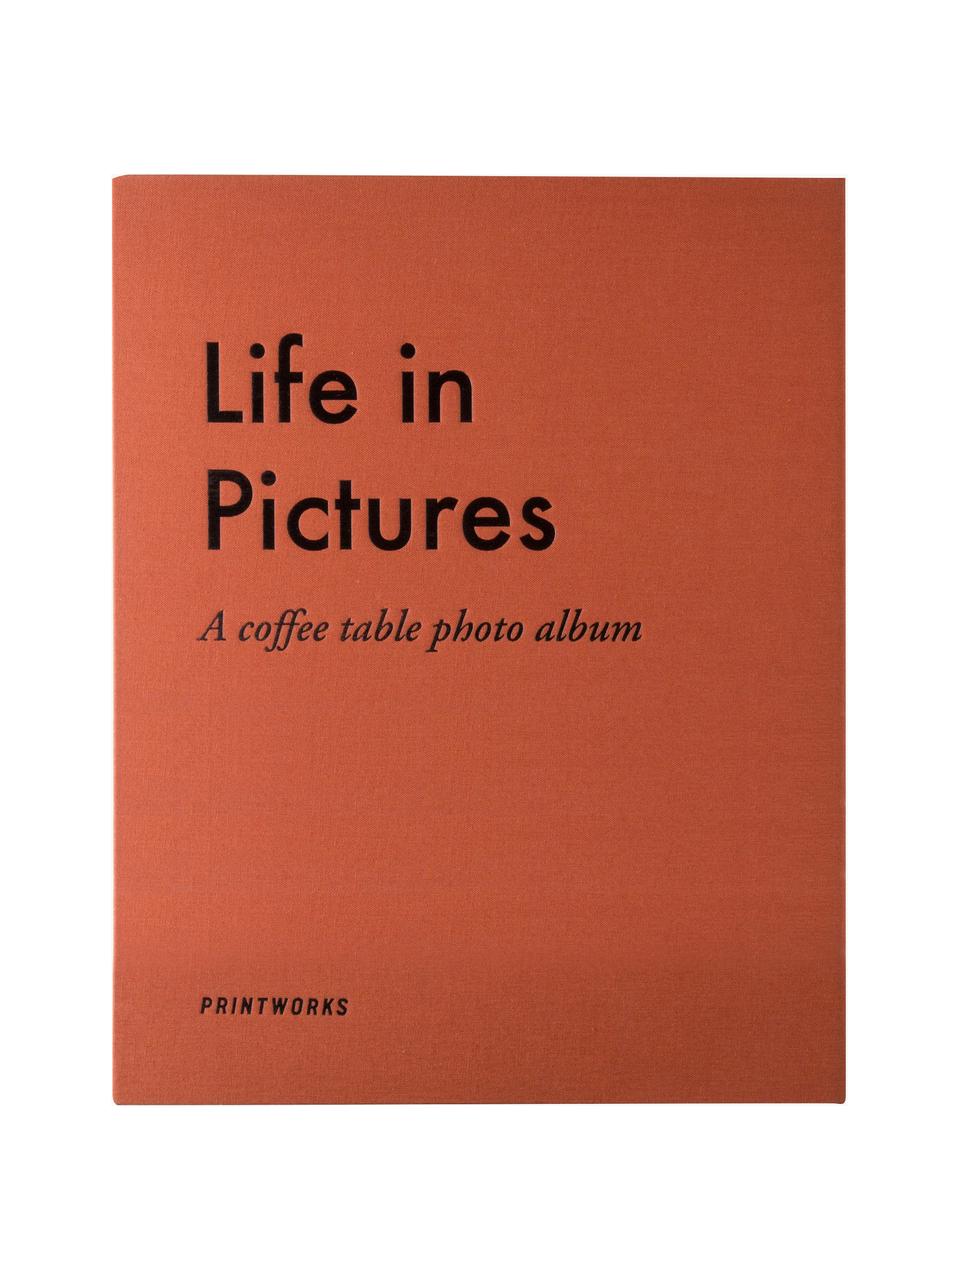 Fotoalbum Life In Pictures, 55 % Graupappe, 18 % Polyester, 15 % Papier, 2 % Baumwolle

Dieses Produkt wird aus nachhaltig gewonnenem, FSC®-zertifiziertem Holz gefertigt., Orange, Schwarz, B 32 x H 26 cm